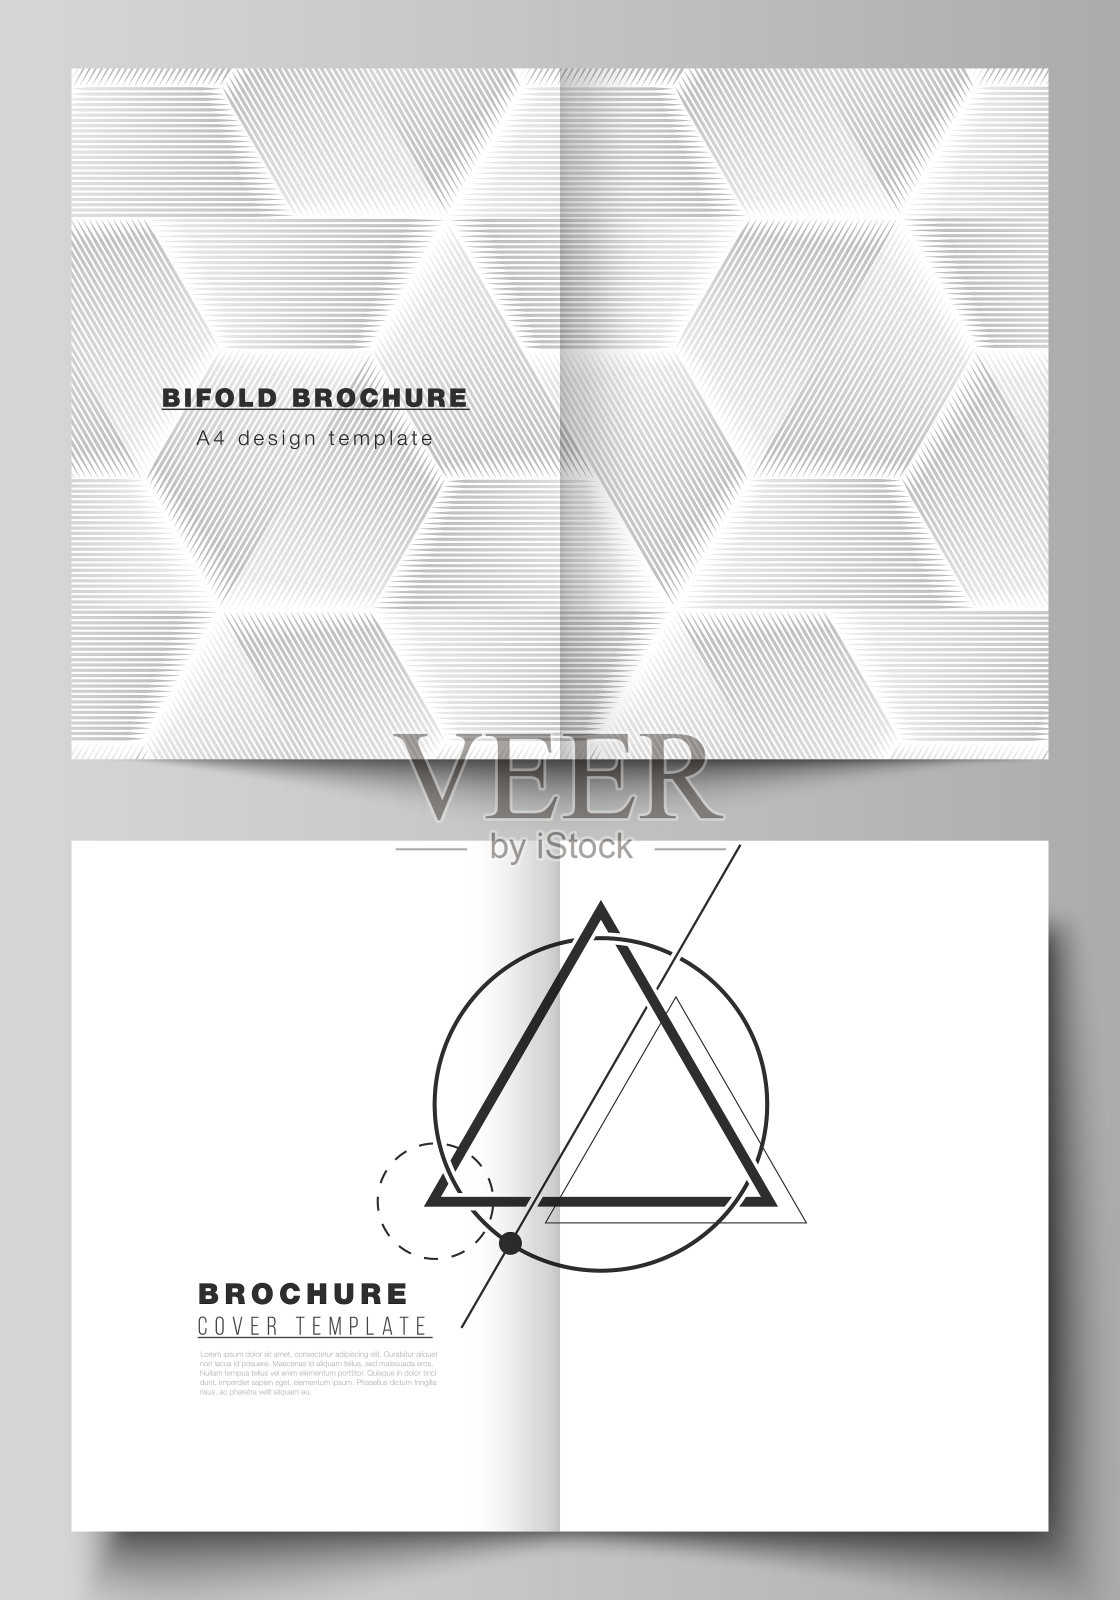 矢量布局的两个A4格式现代封面模型设计模板双折小册子，杂志，传单，小册子。抽象几何三角形设计背景采用三角形风格图案。设计模板素材